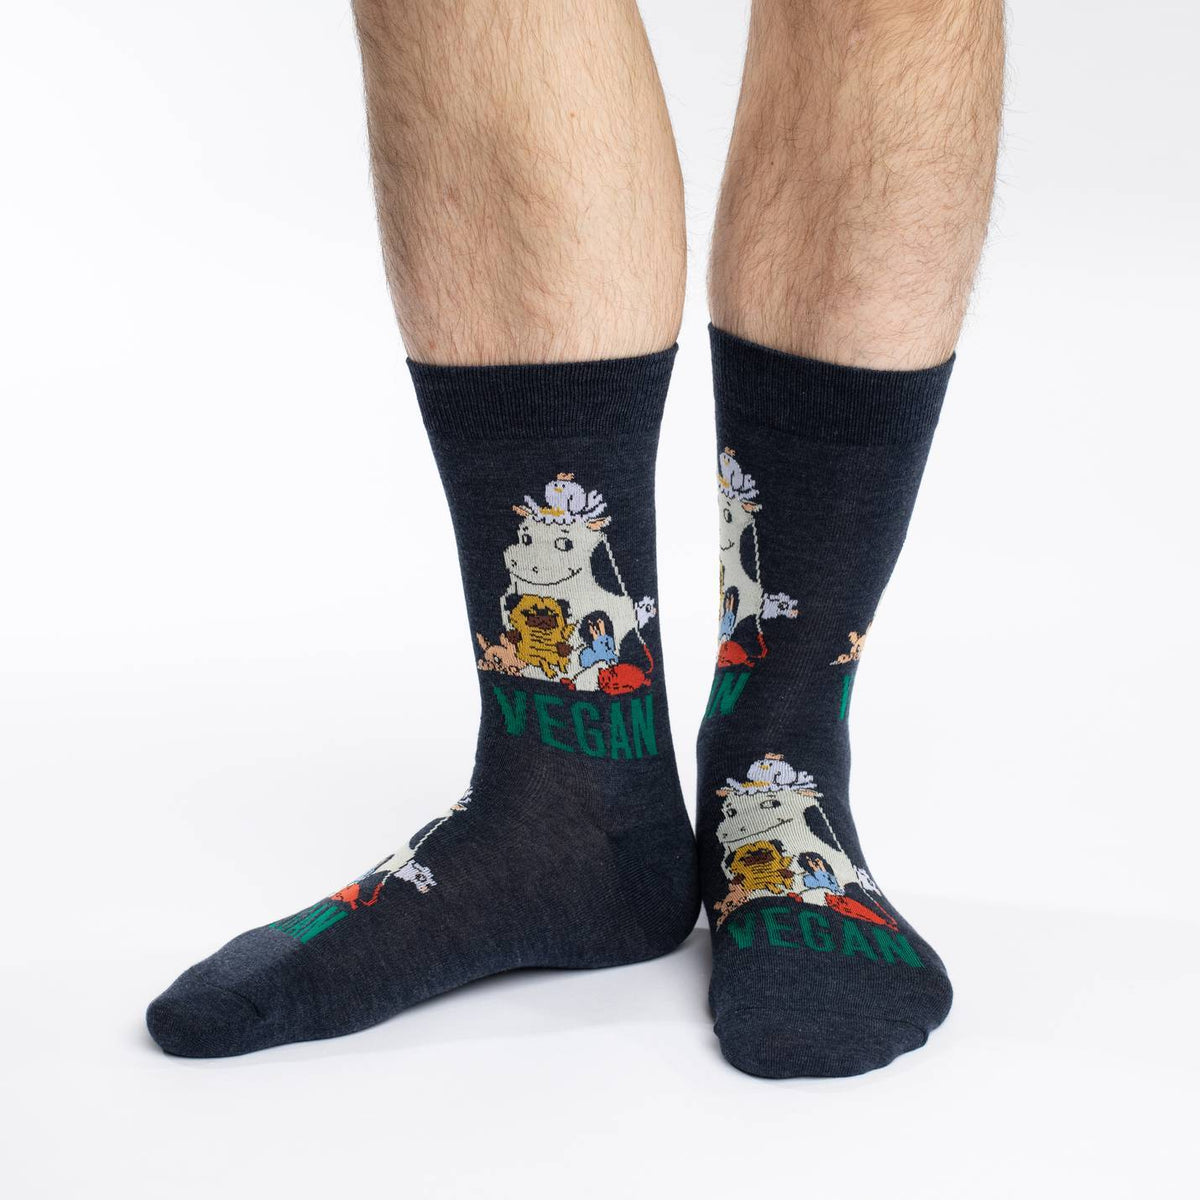 Men's Vegan Socks